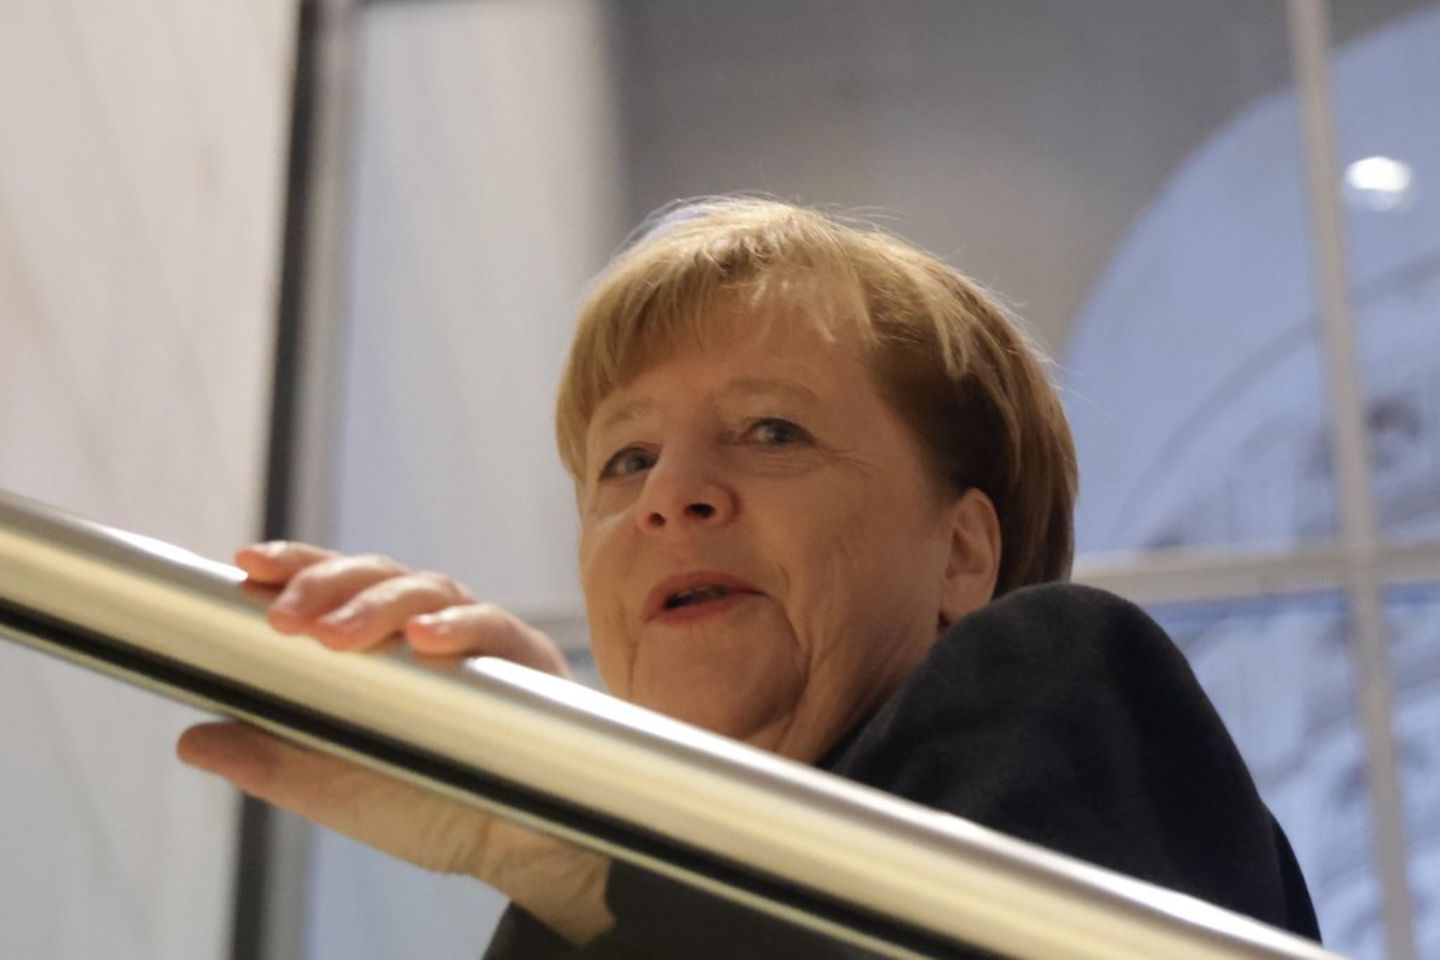 Angela Merkels Autobiografie erscheint im November.